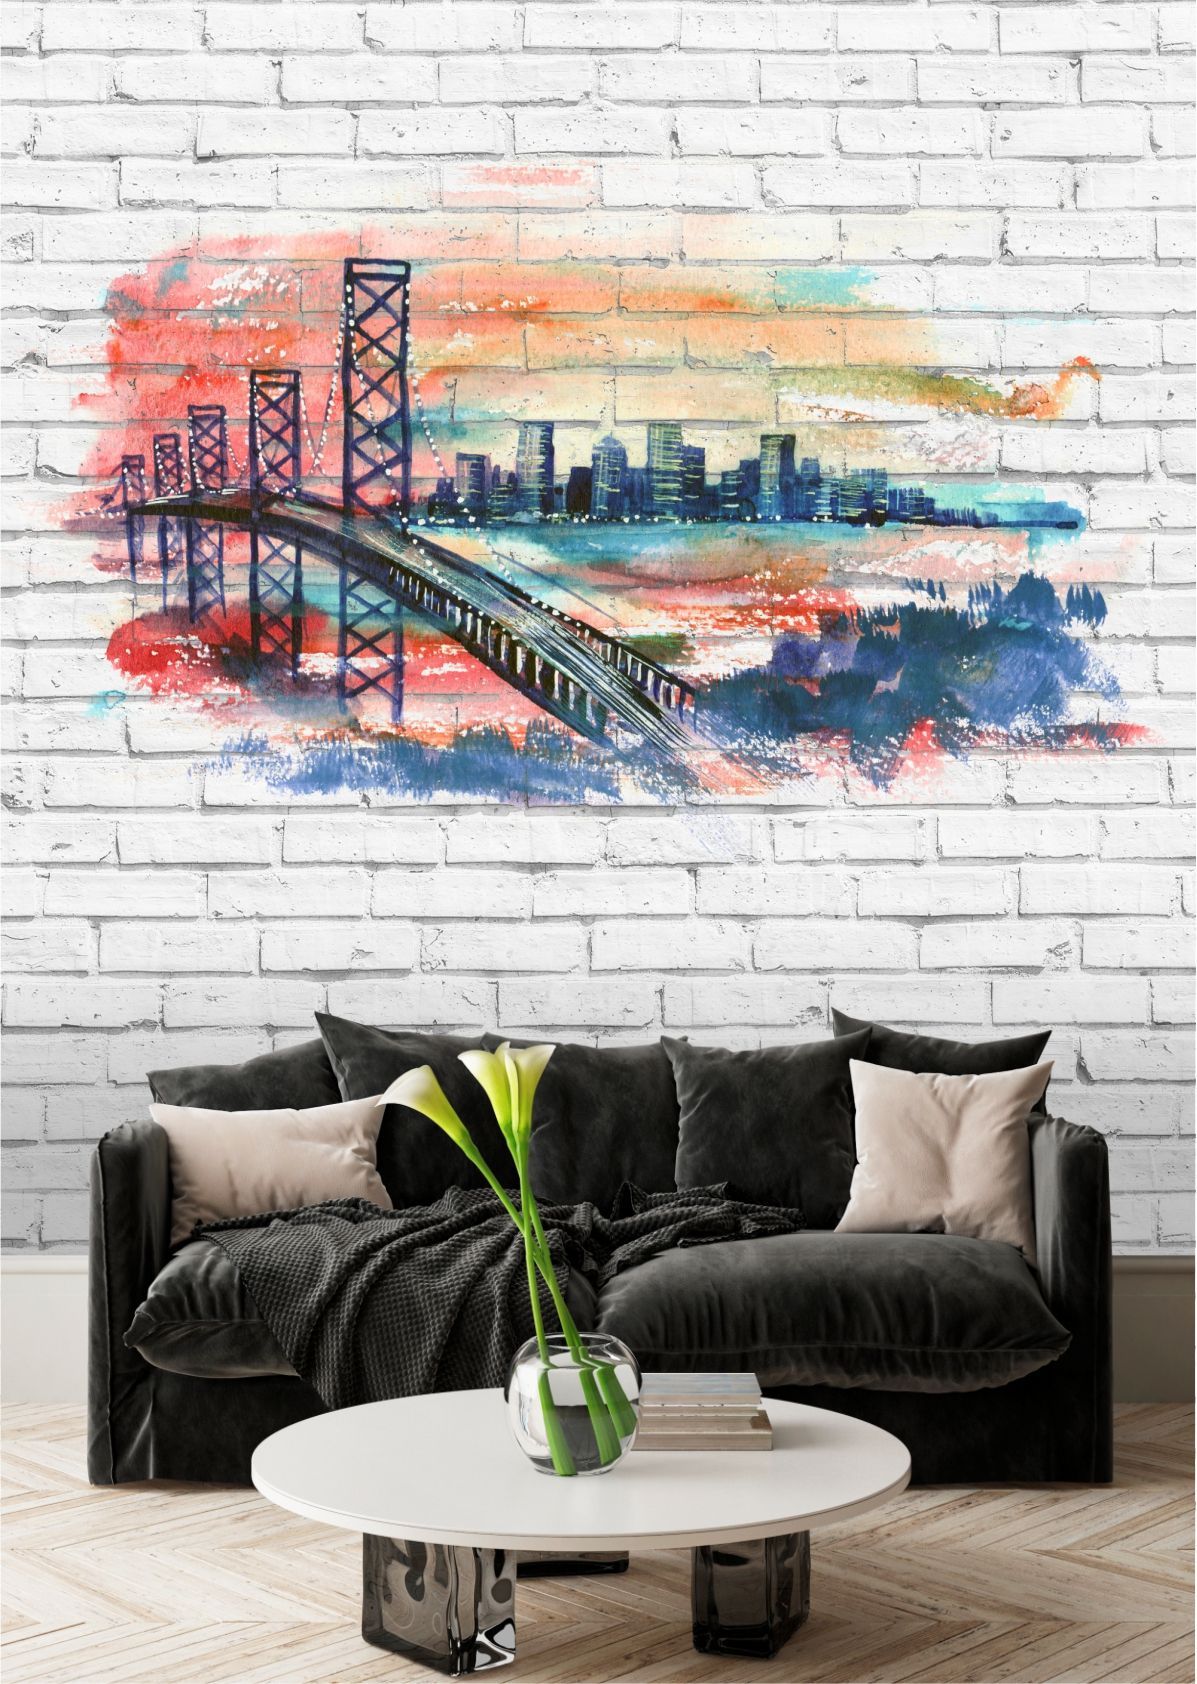 фото Фотообои dekor vinil мост в нью-йорке на фоне кирпичной стены 200х270 см